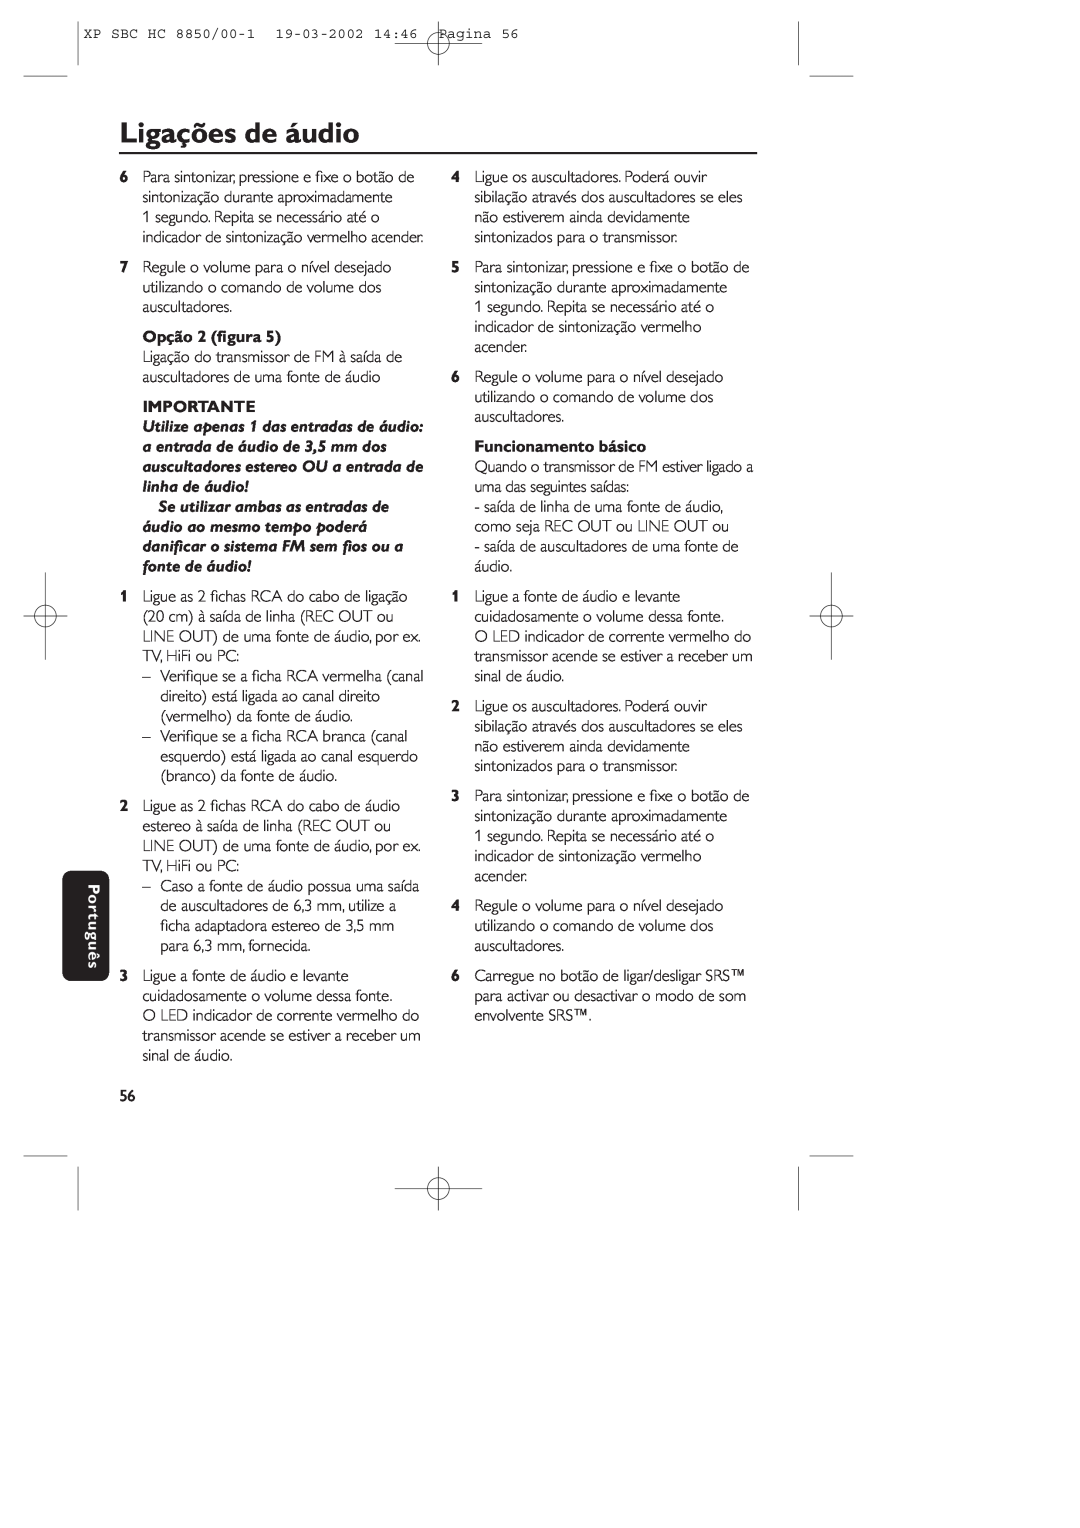 Philips HC8850 manual Ligações de áudio, Português, Opção 2 ﬁgura, Importante, Funcionamento básico 